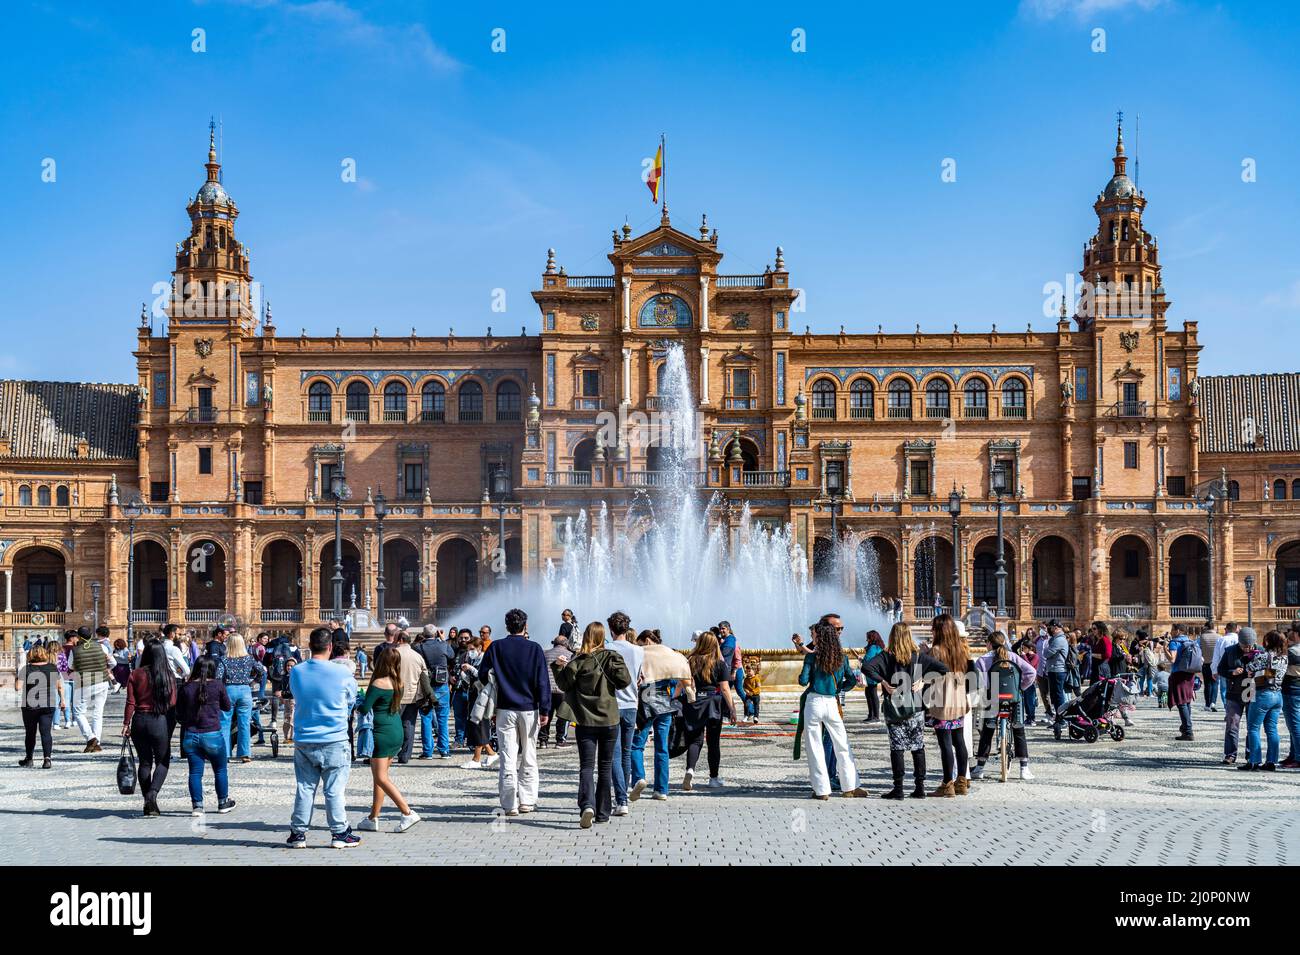 Touristen am Brunnen auf der Plaza de España  in Sevilla, Andalusien, Spanien  |  tourists at the fountain on Plaza de España square, Seville, Andalus Stock Photo